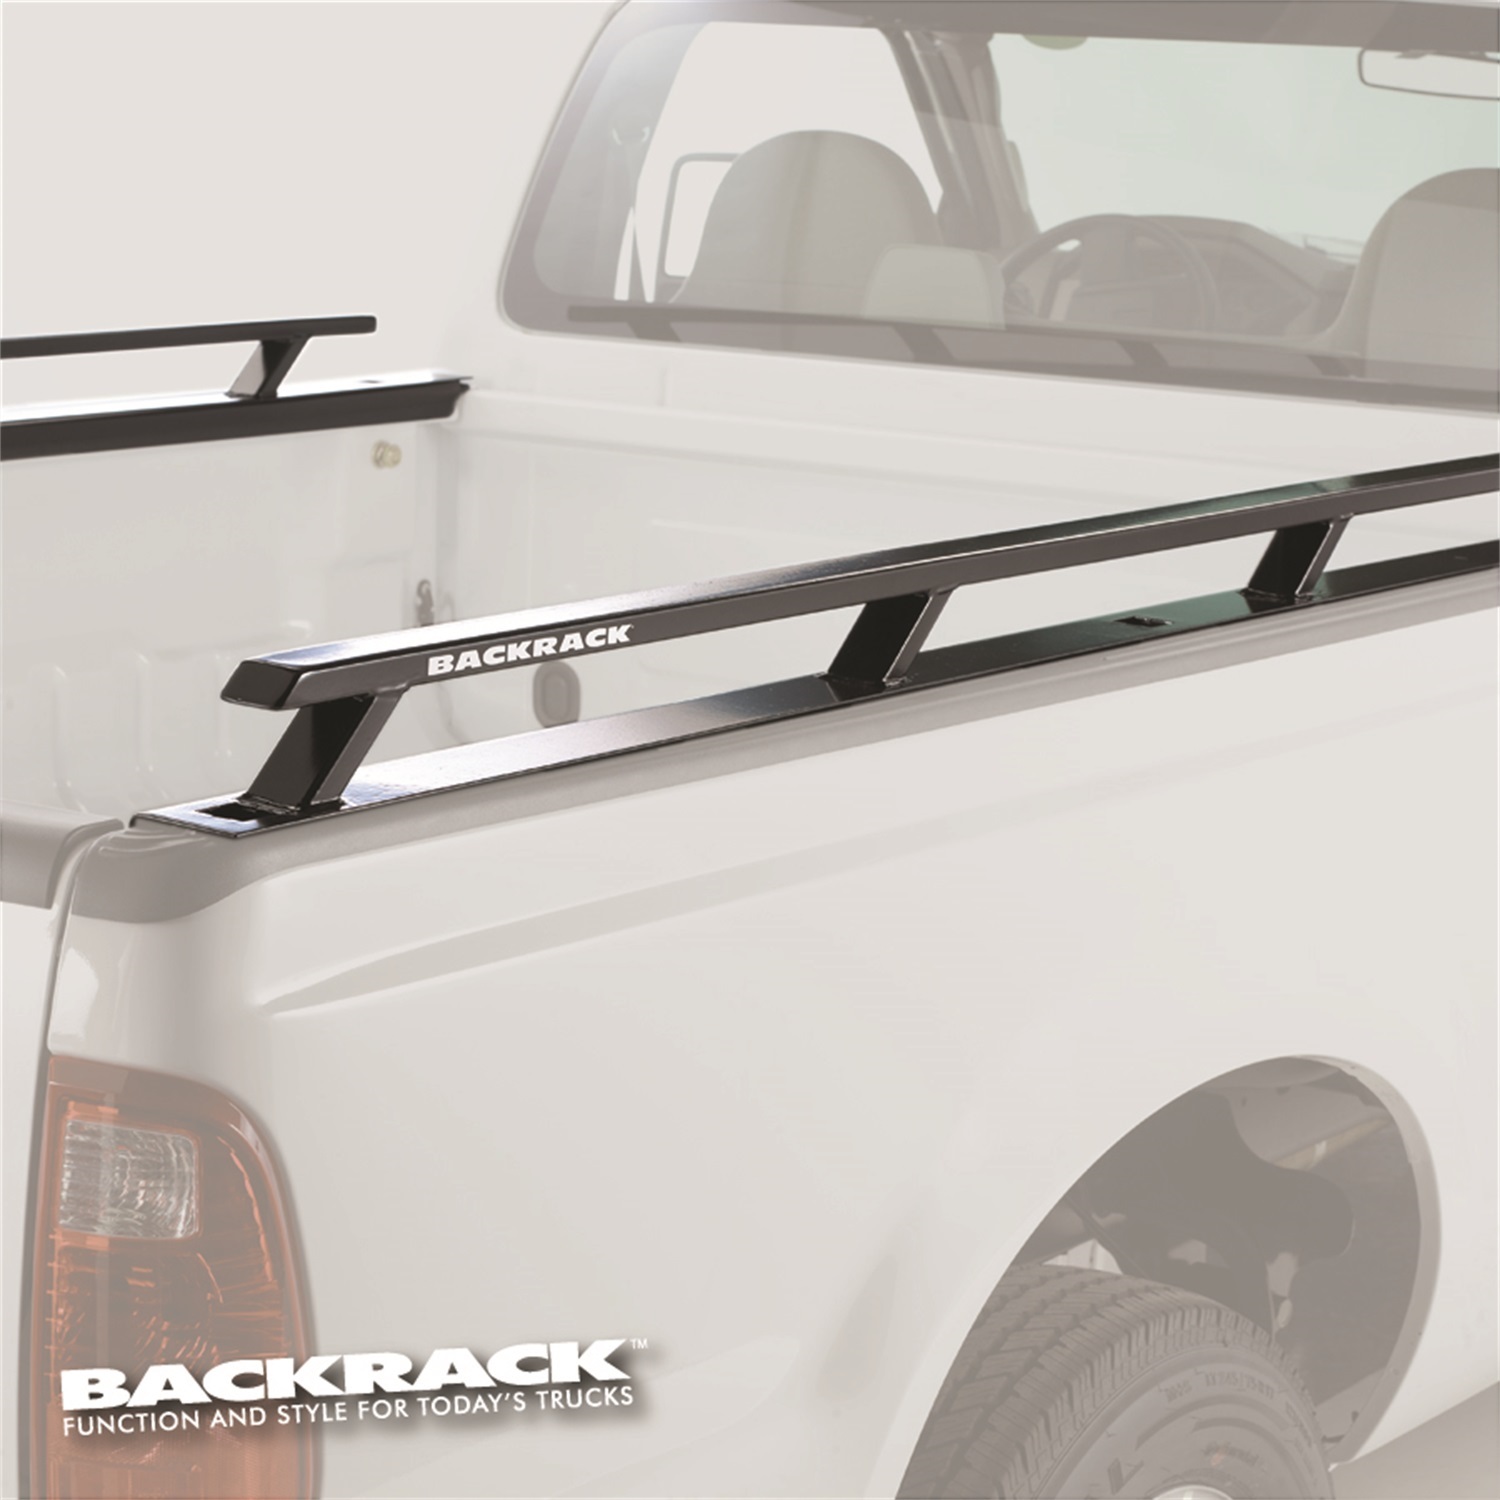 Backrack Backrack 80517 Side Rails Fits 02-14 1500 2500 3500 Ram 1500 Ram 2500 Ram 3500